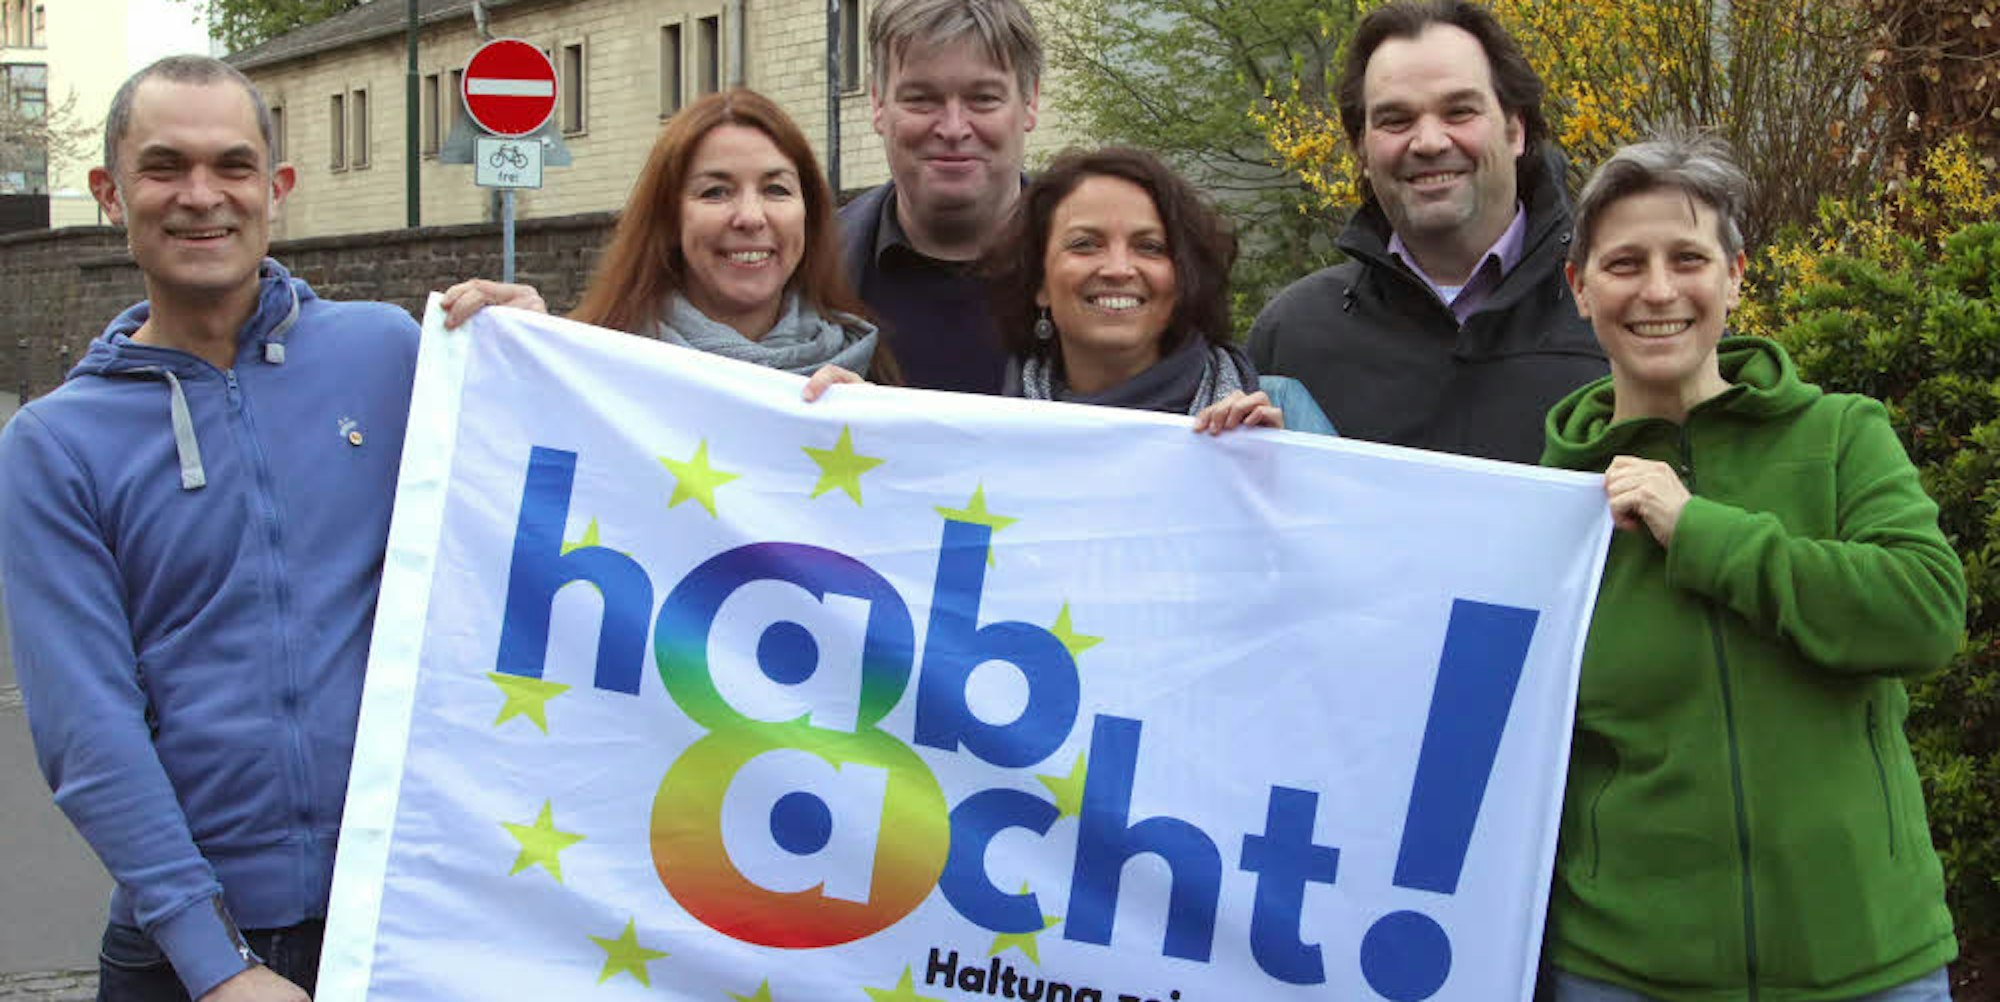 Bei der ersten Veranstaltung der neuen Kerpener Initiative „Hab 8cht!“ hielt der Bonner Politikwissenschaftler Siebo Janssen (Mitte) ein Plädoyer für ein demokratisches, menschenfreundliches Europa.